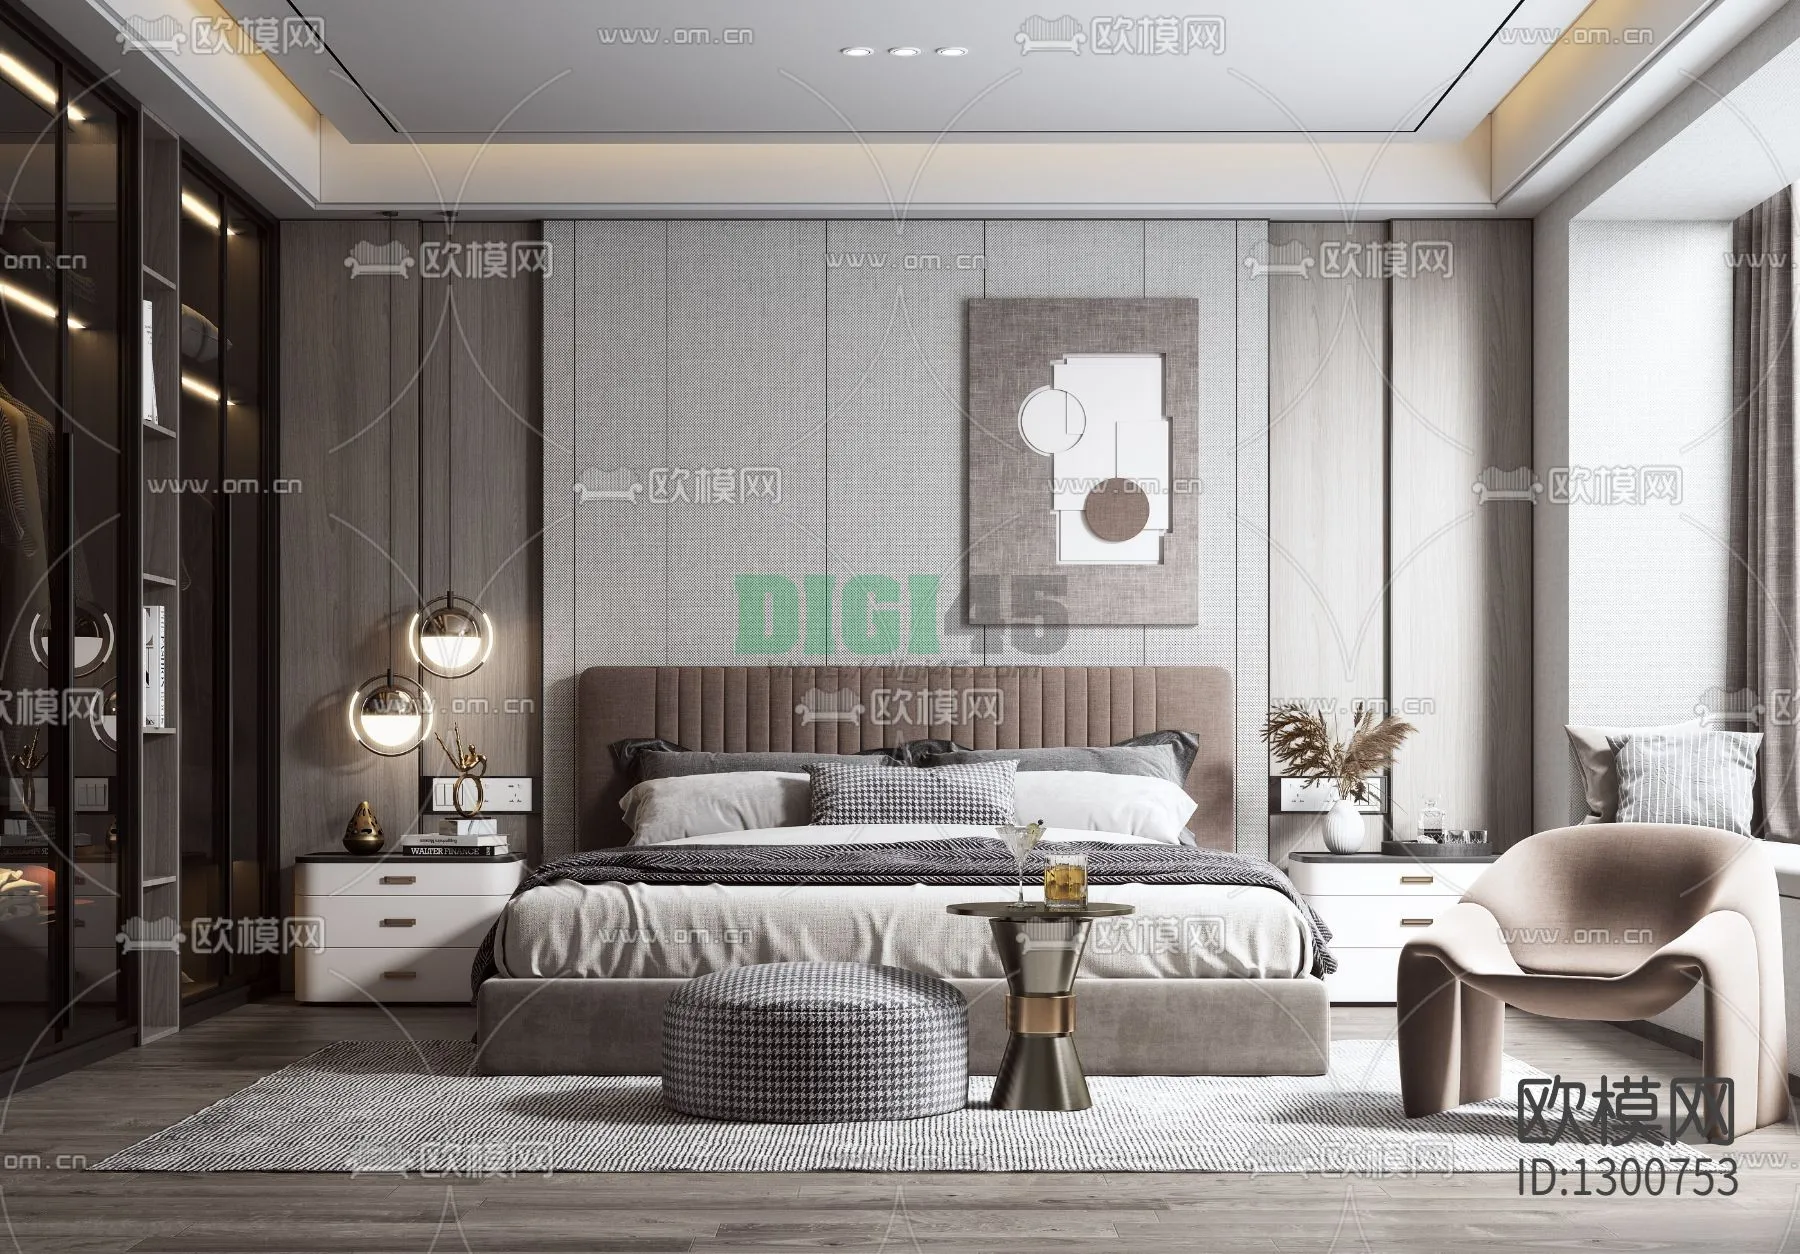 Bedroom 3D Scenes – 1140